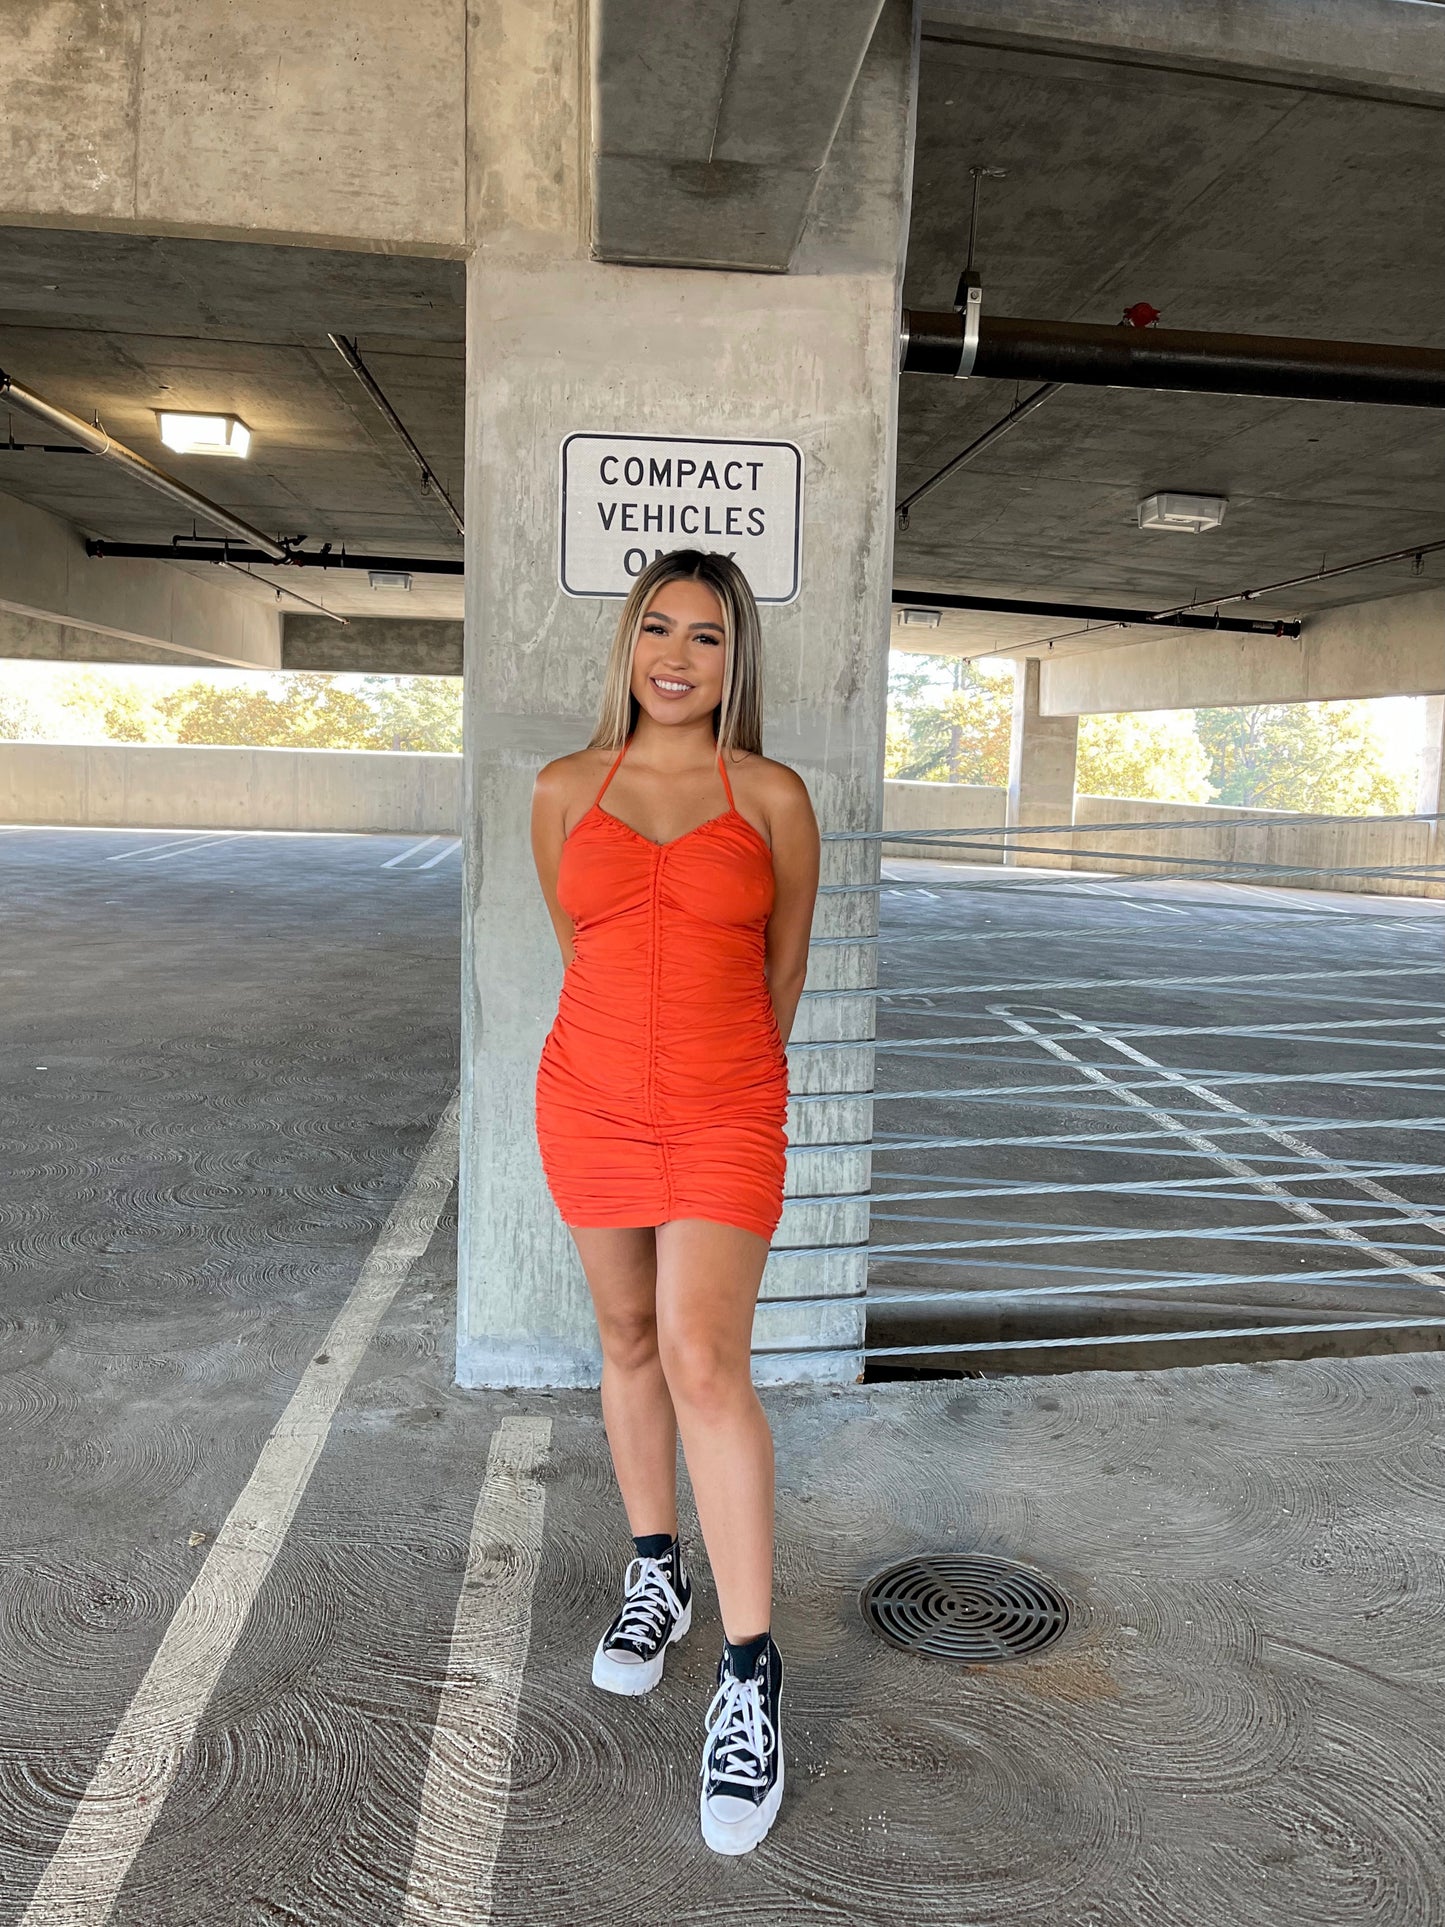 Pumpkin Spice Dress